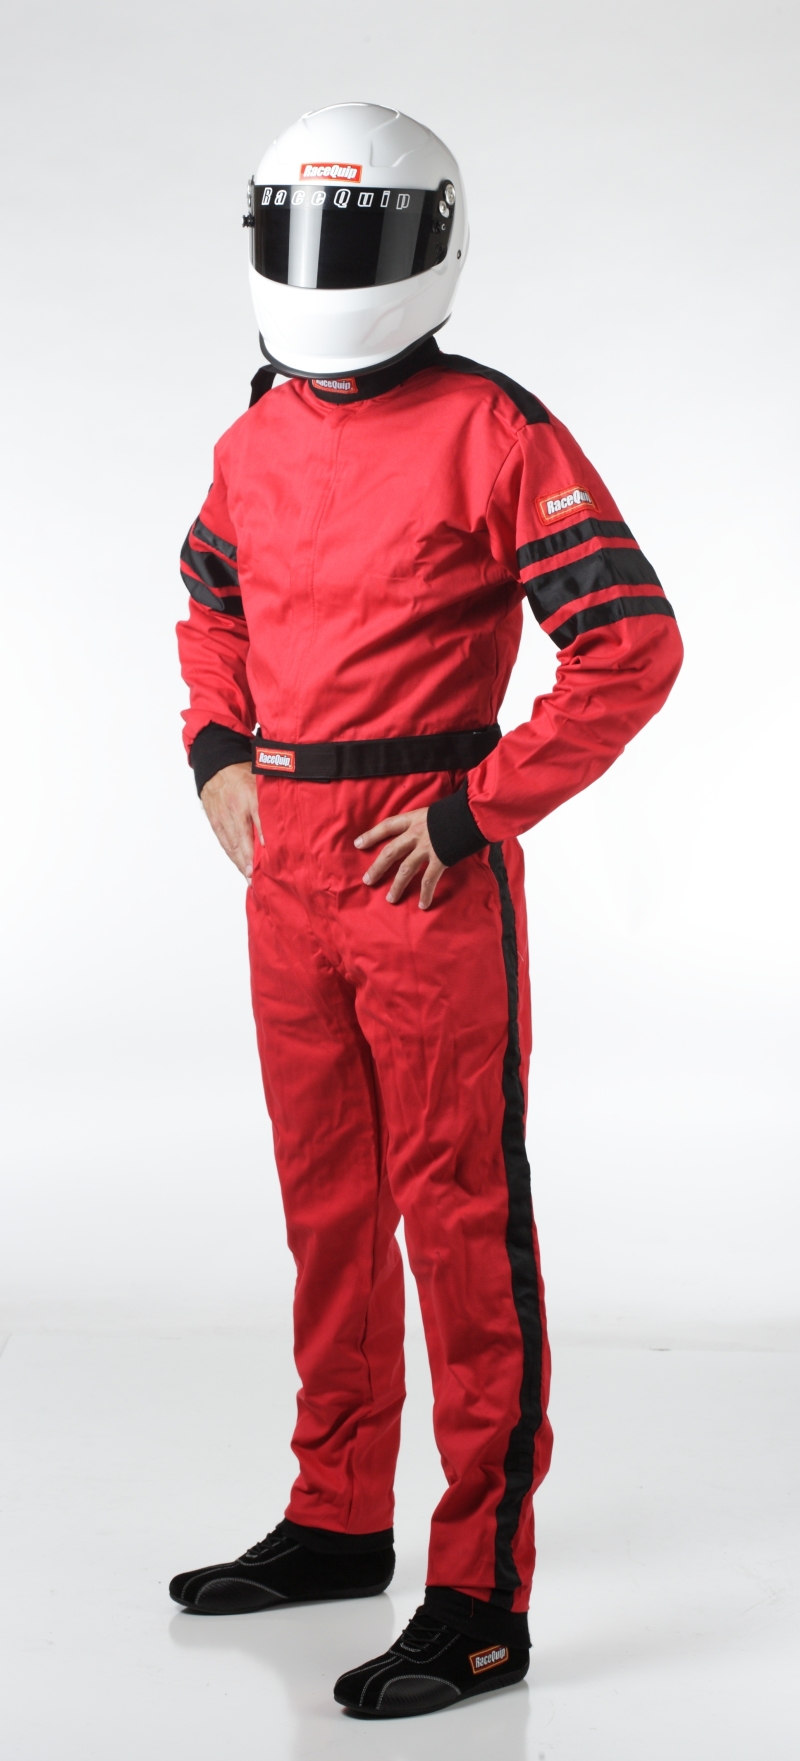 RaceQuip Red SFI-1 1-L Suit - Medium - 110013